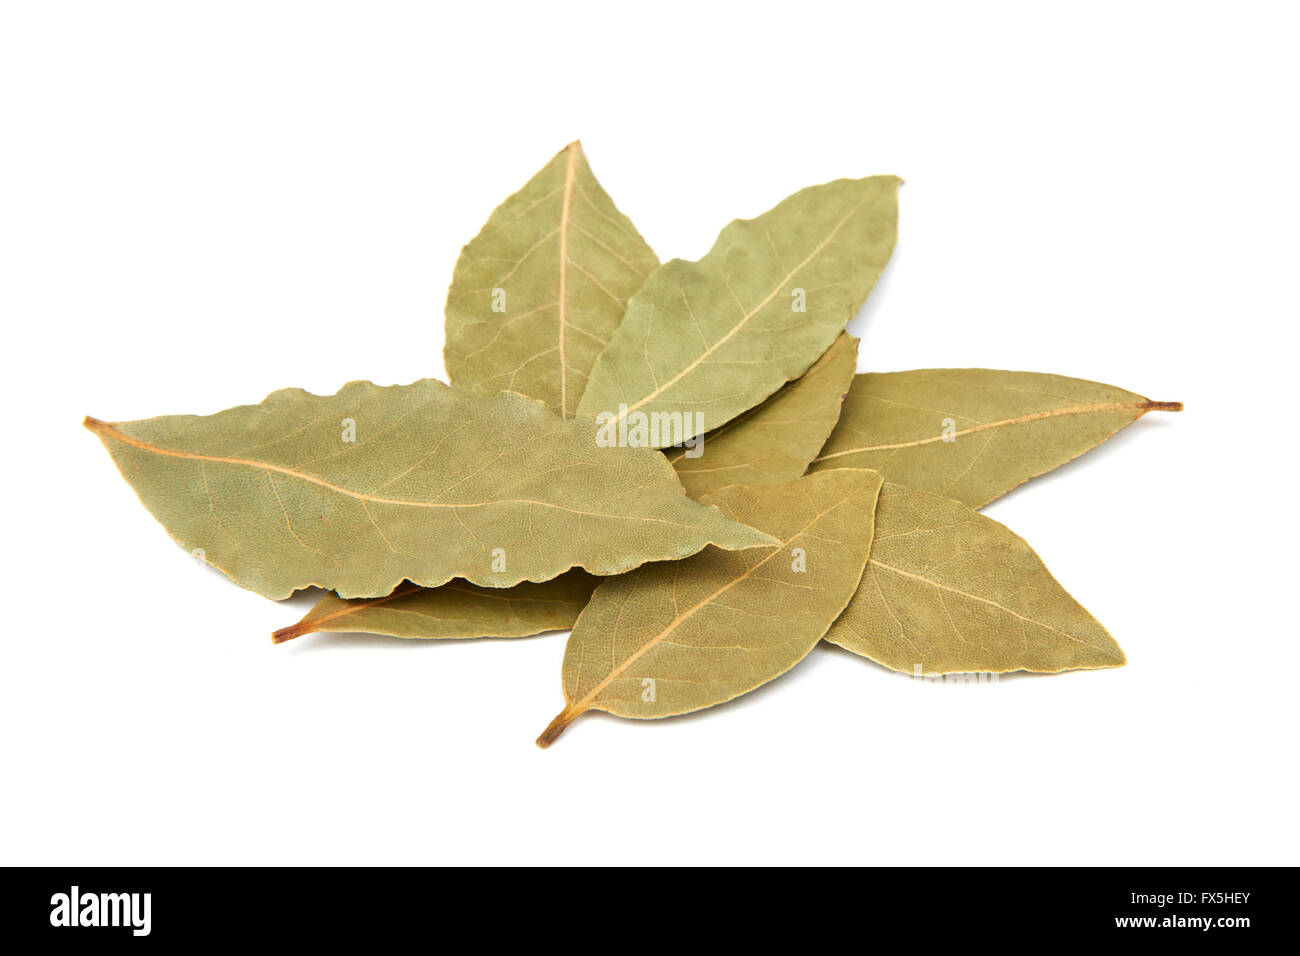 Primo piano immagine di secche foglie di alloro isolato su uno sfondo bianco Foto Stock